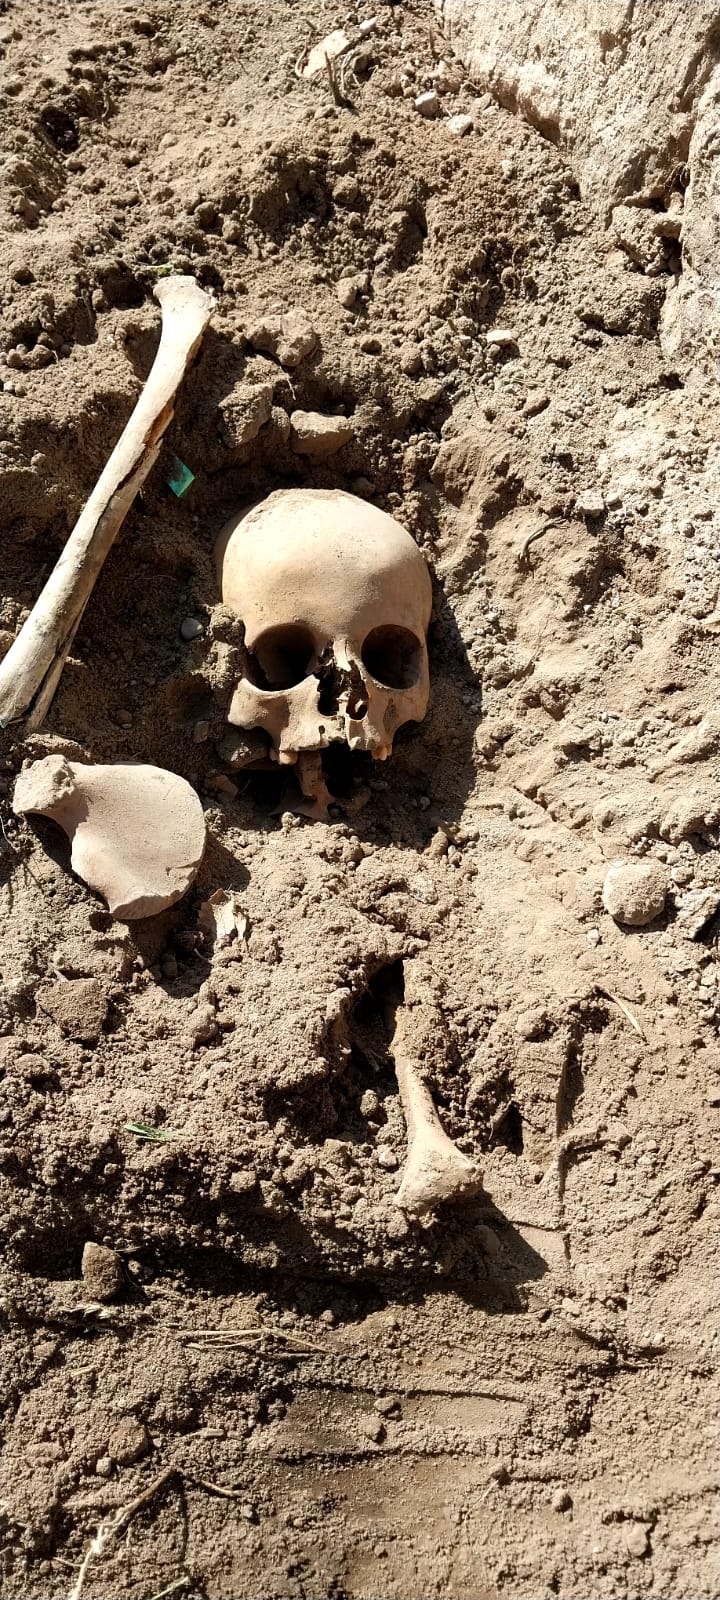 okul-bahcesinde-insan-kemikleri-bulundu-3957-dhaphoto1.jpg